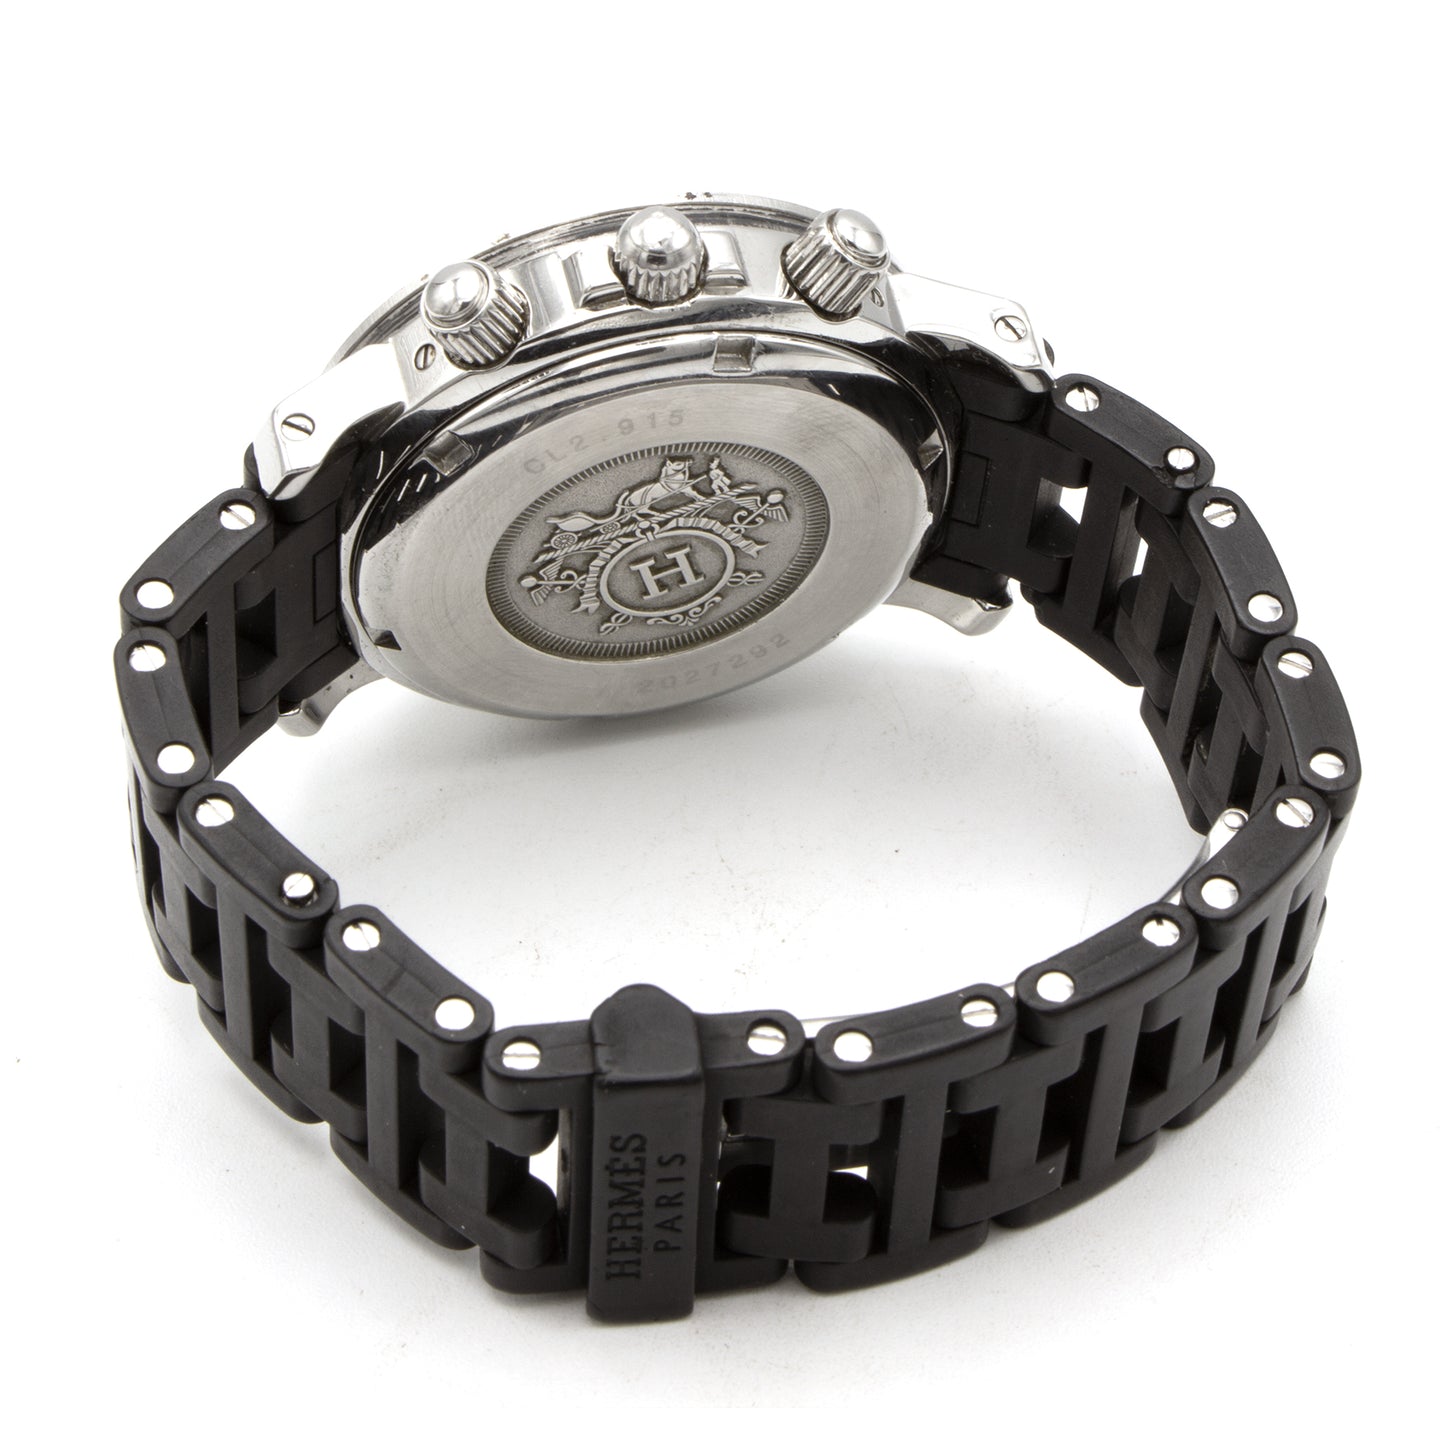 Hermès Clipper Chrono CL2.915 watch